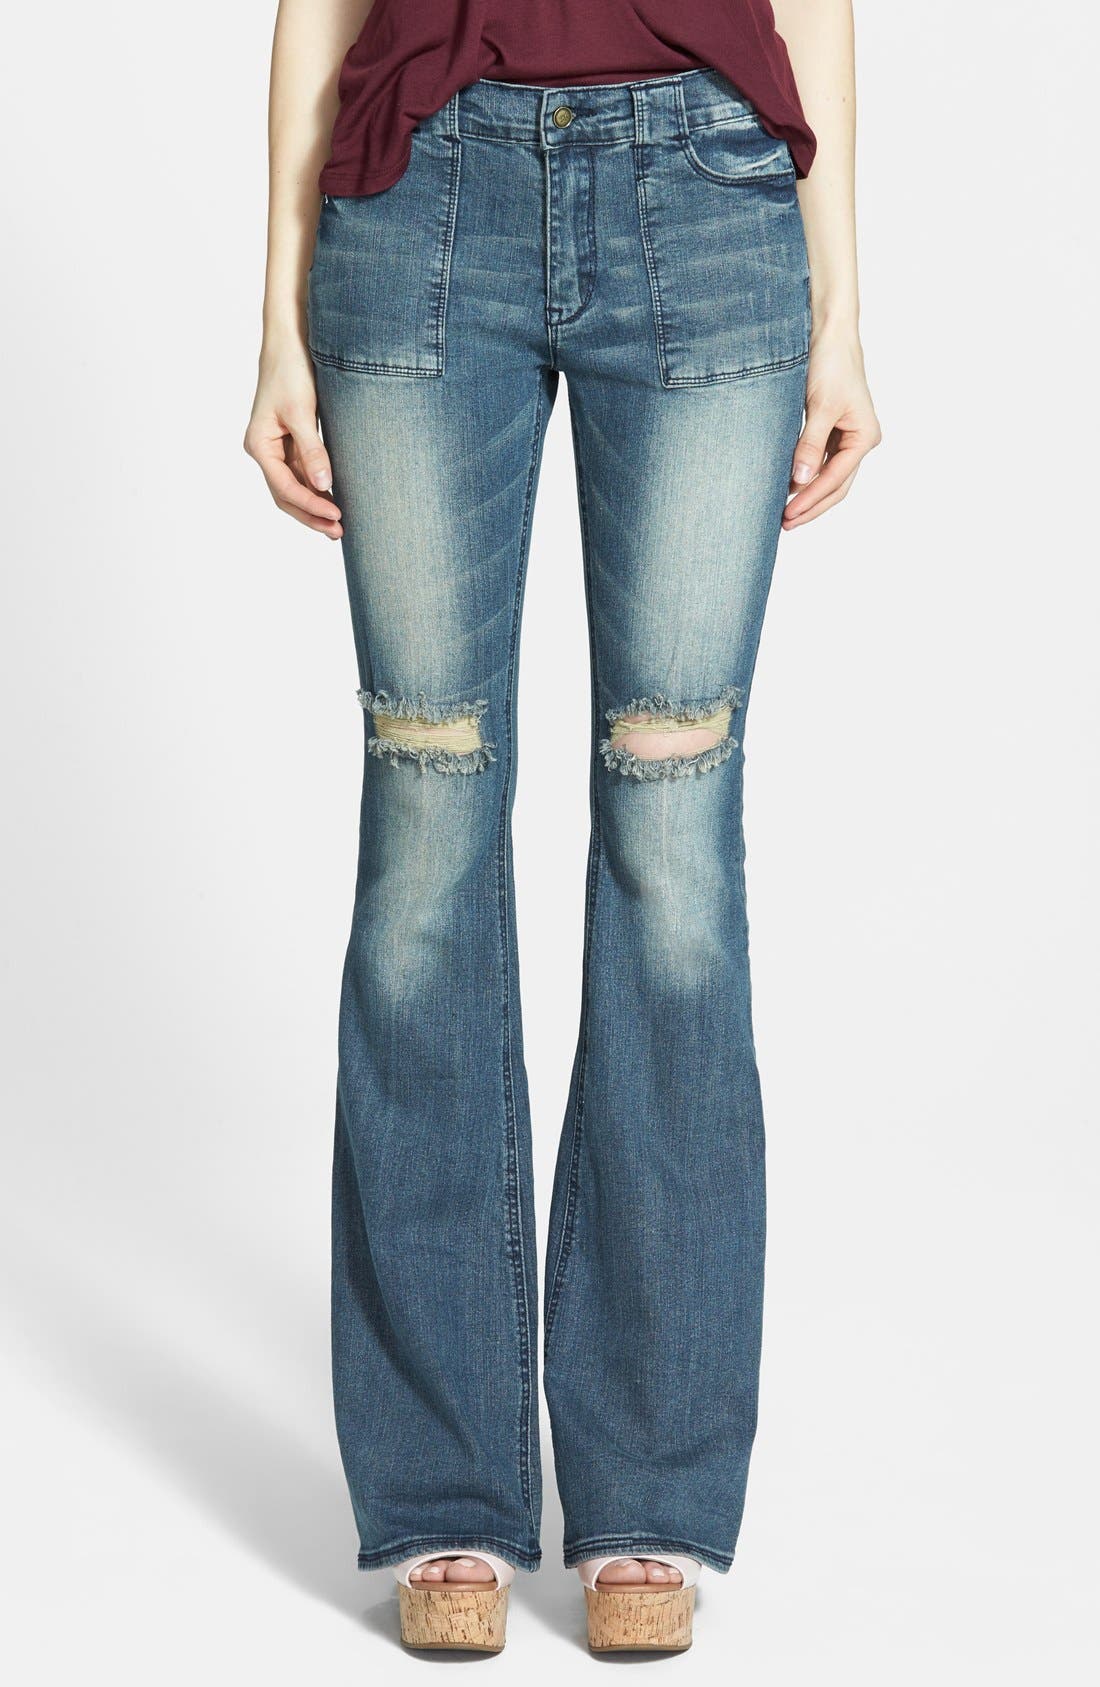 lee cooper high waist jeans womens